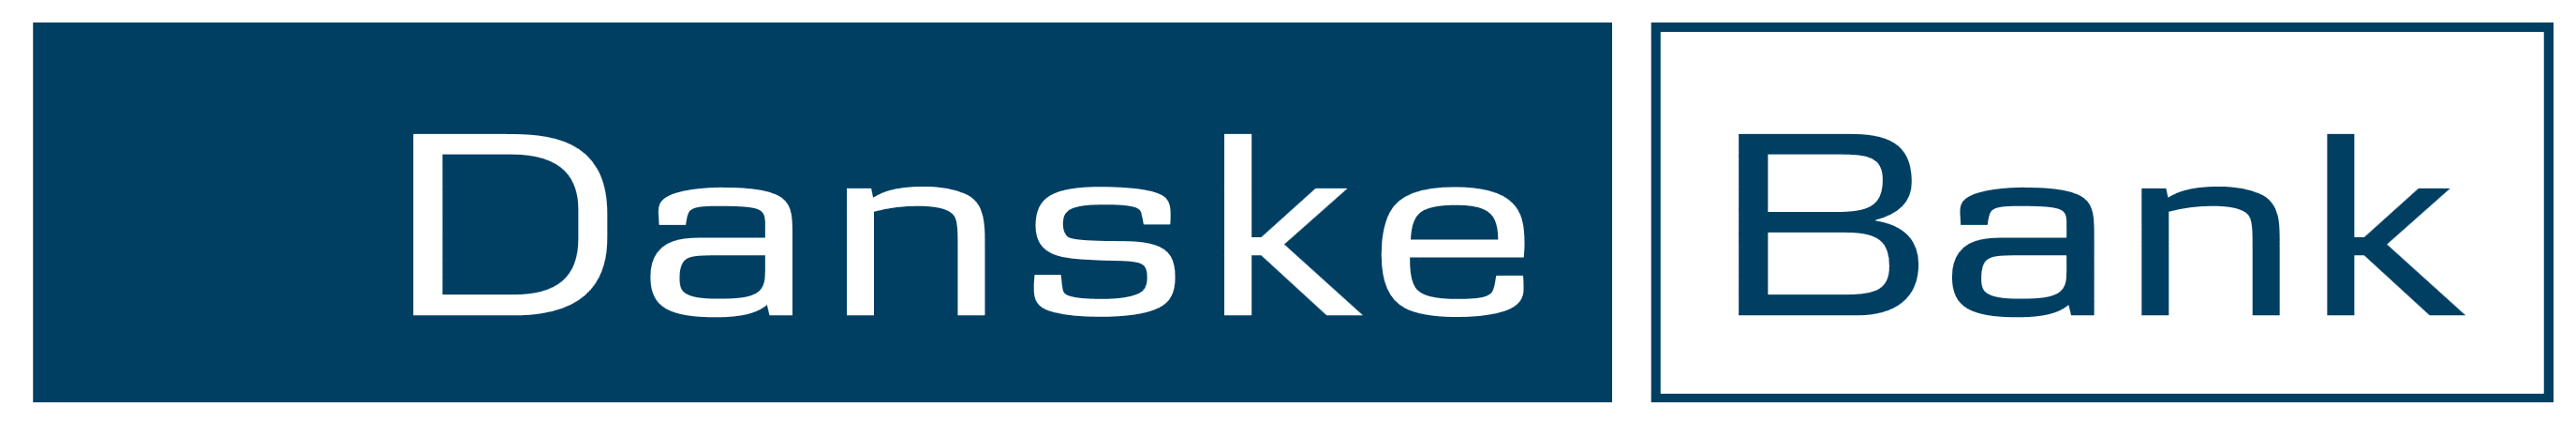 Danske_Bank_logo_logotype